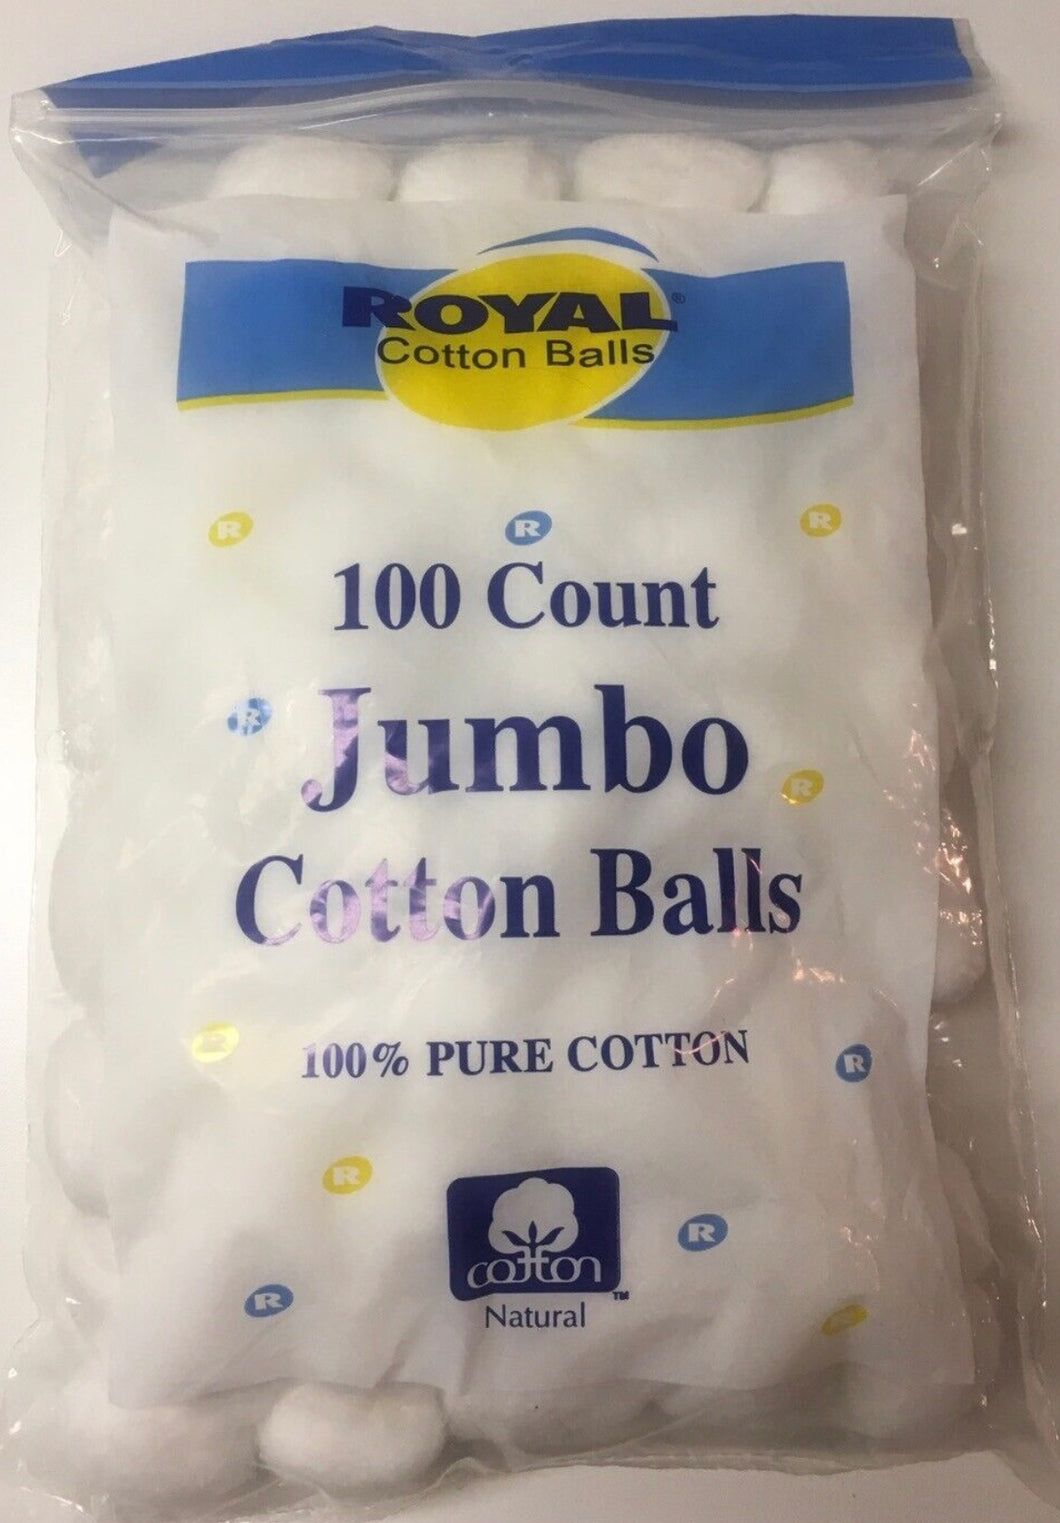 Cotton Balls jumbo